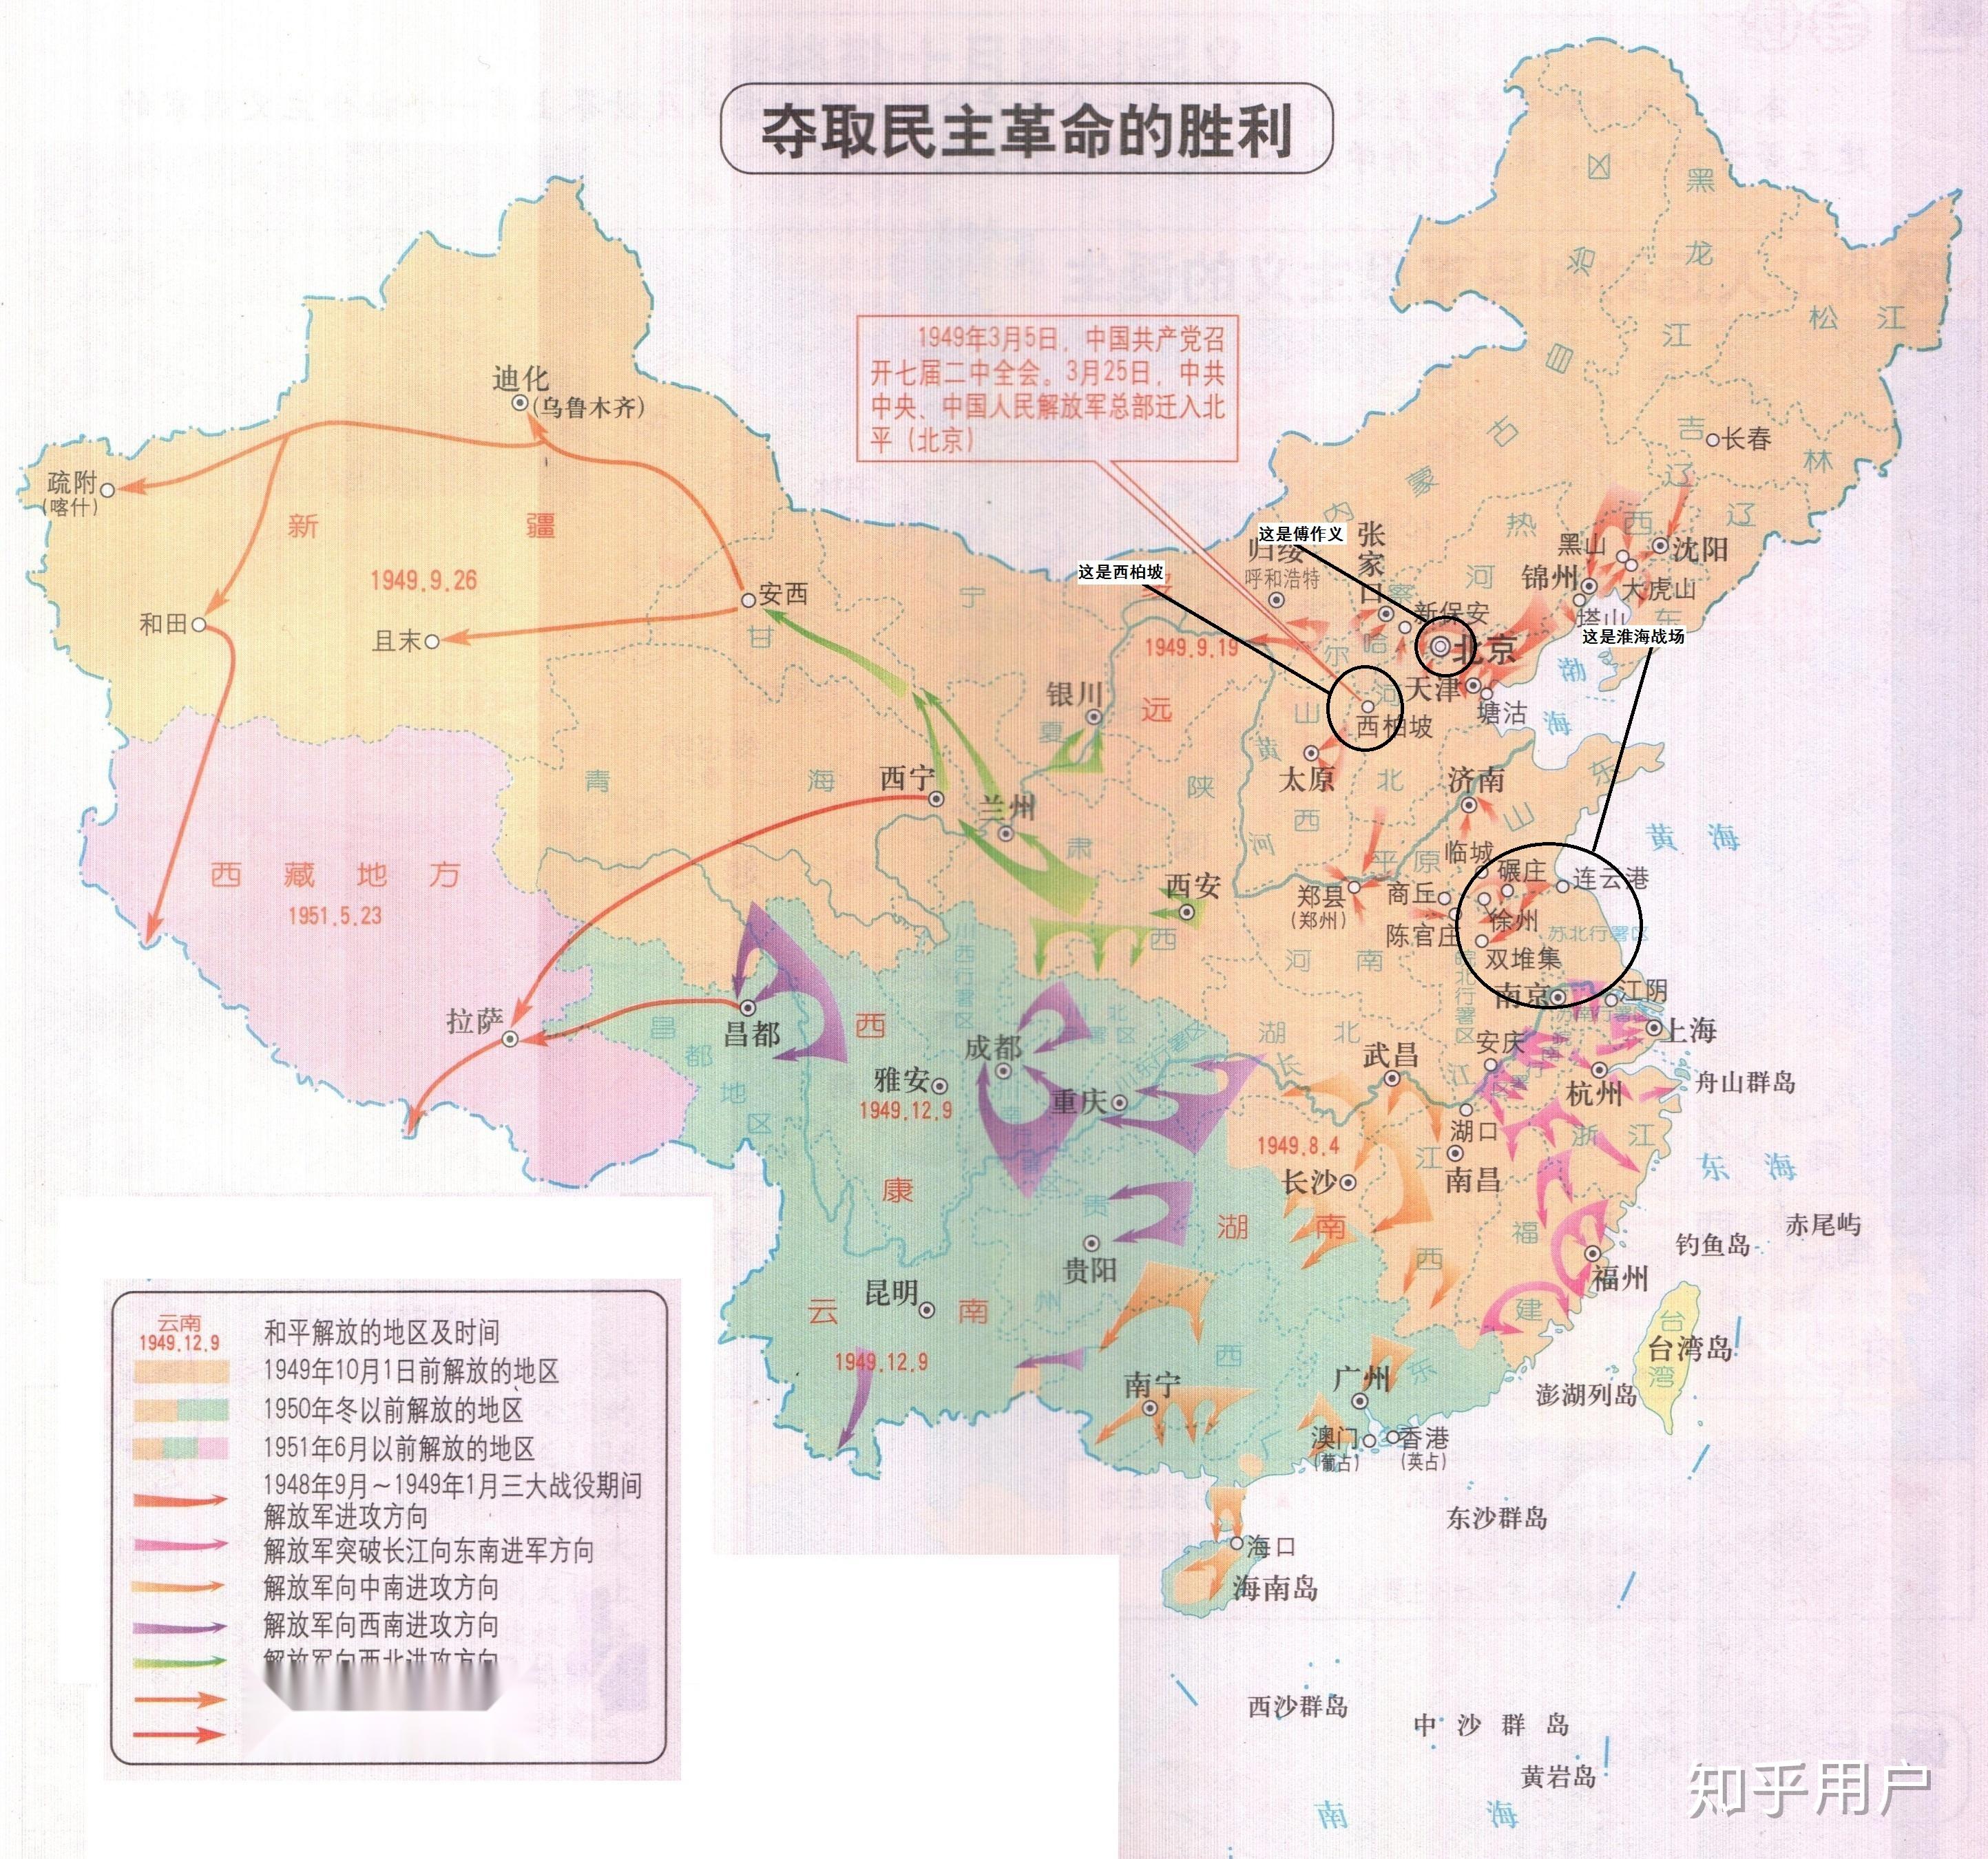 如果傅作义放弃北京和天津,留部分兵力阻止四野,其他兵力全部南下进入